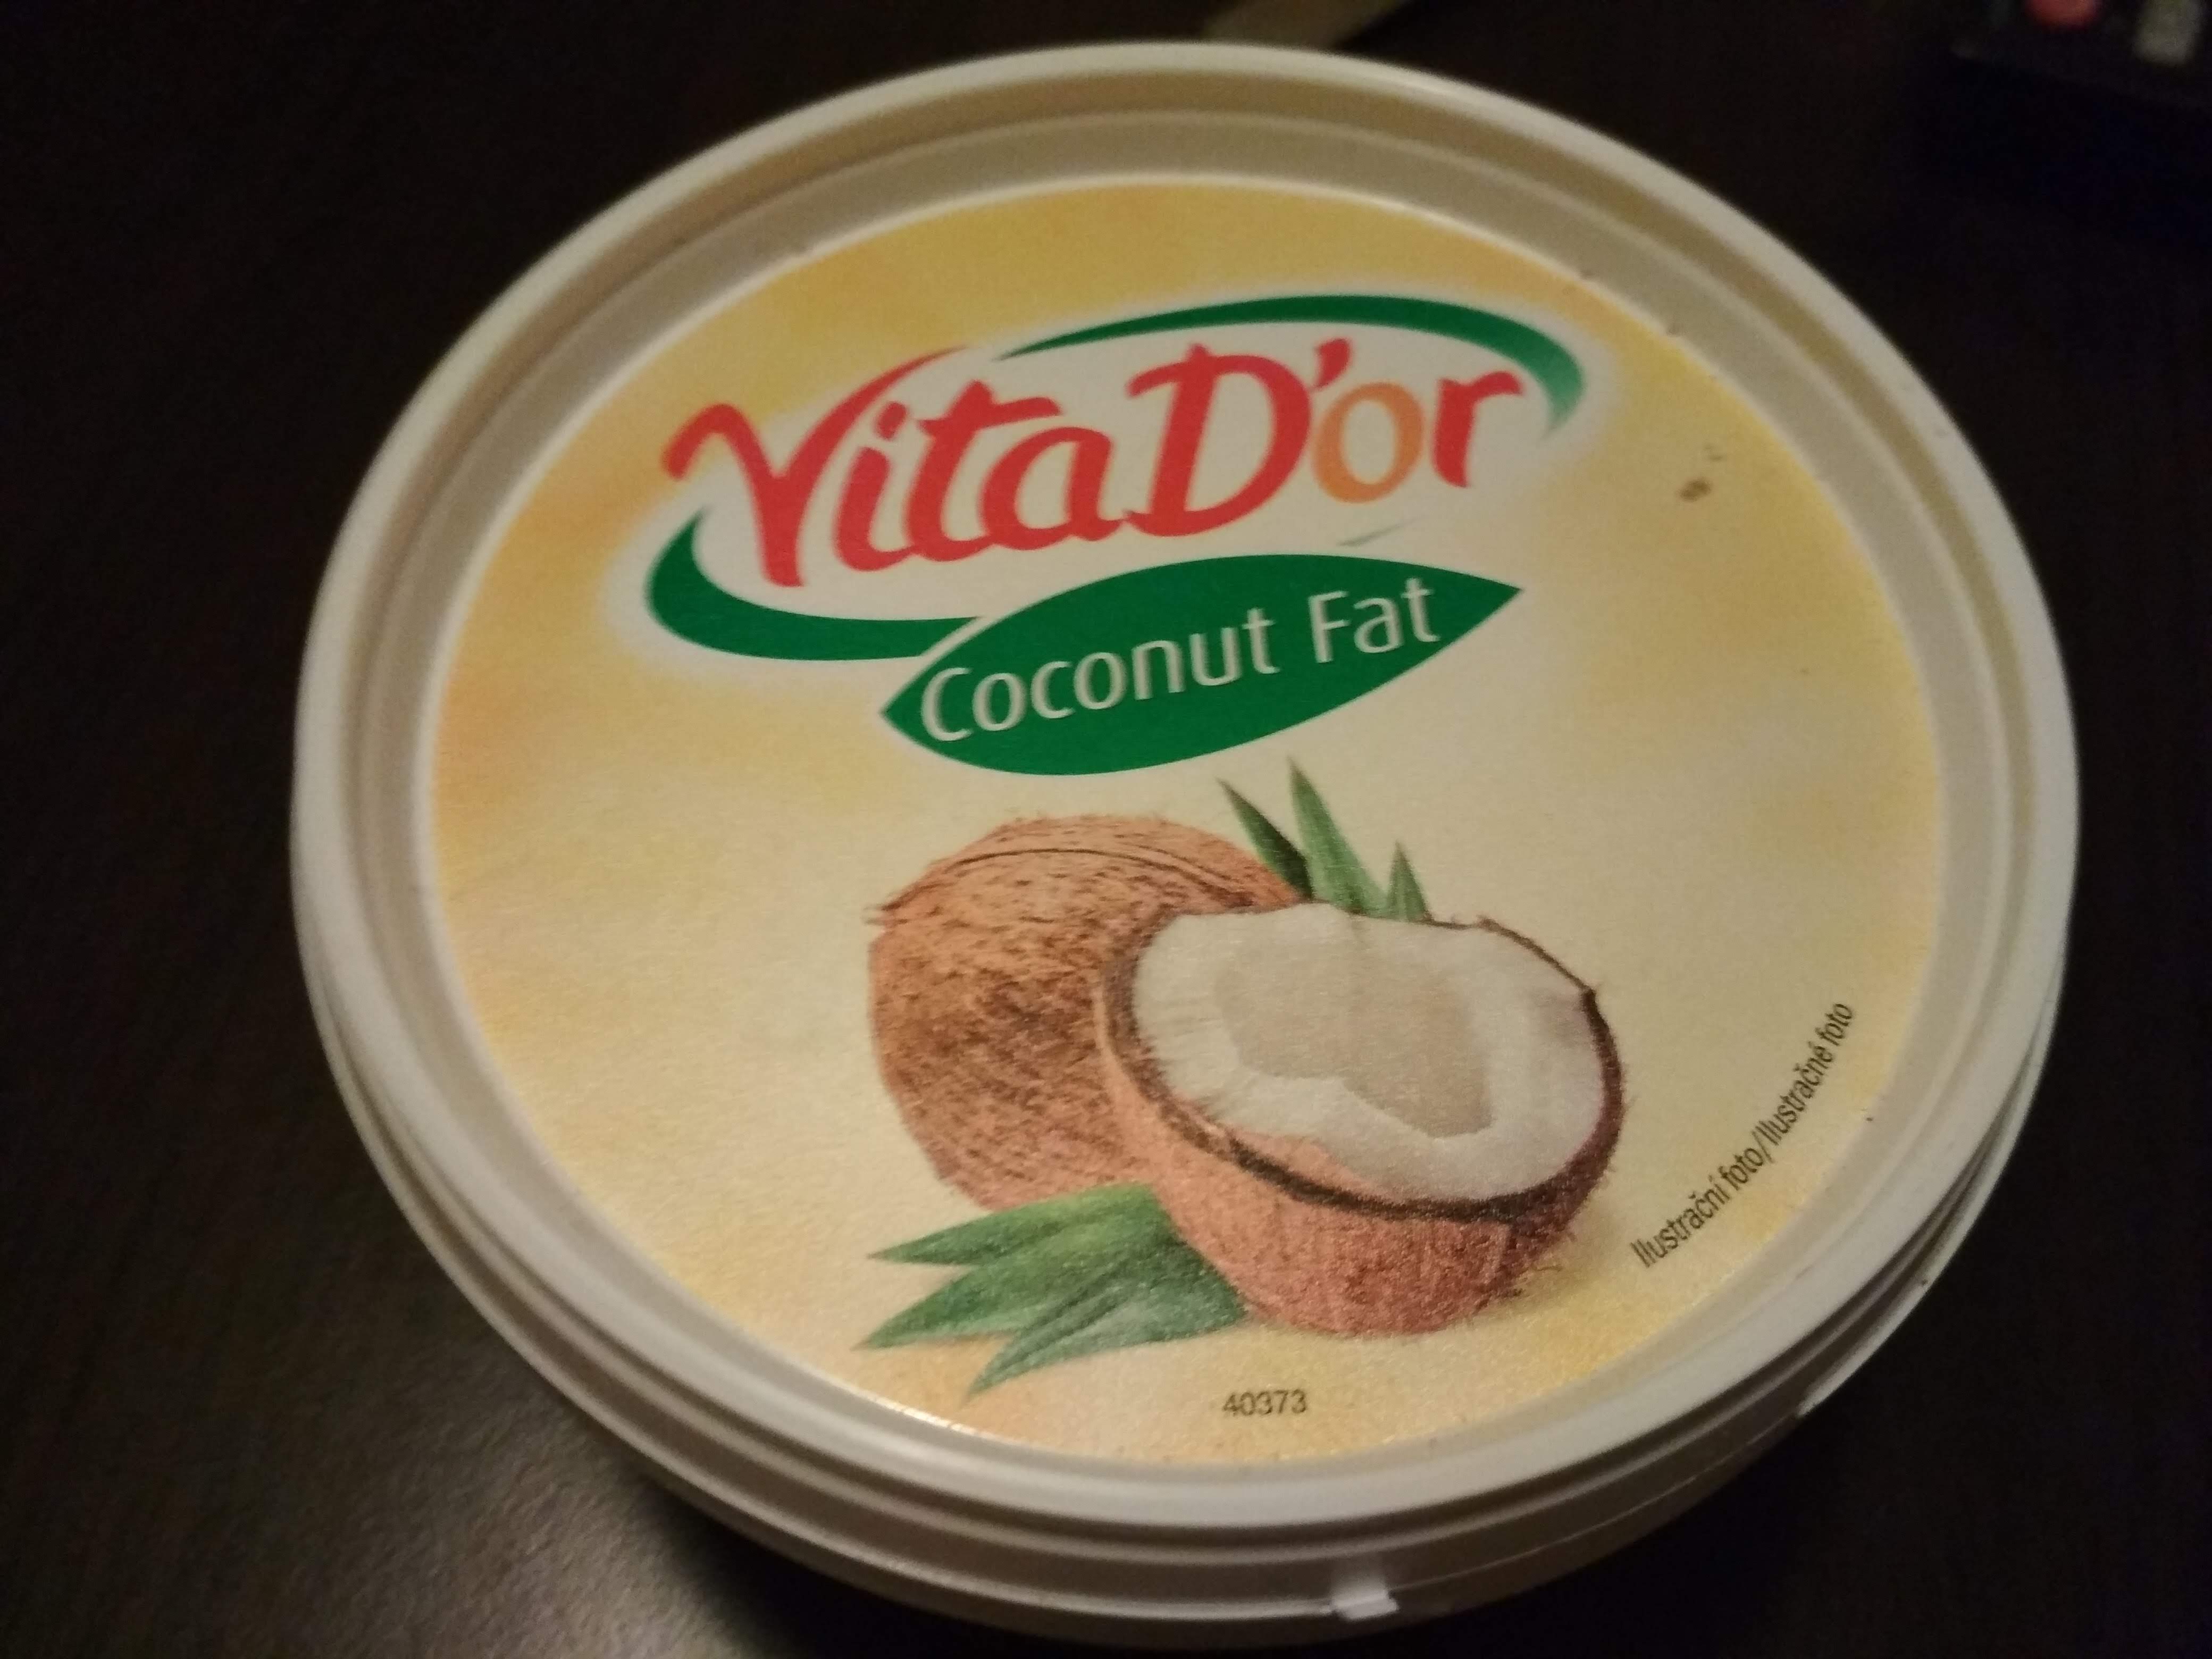 Coconut fat